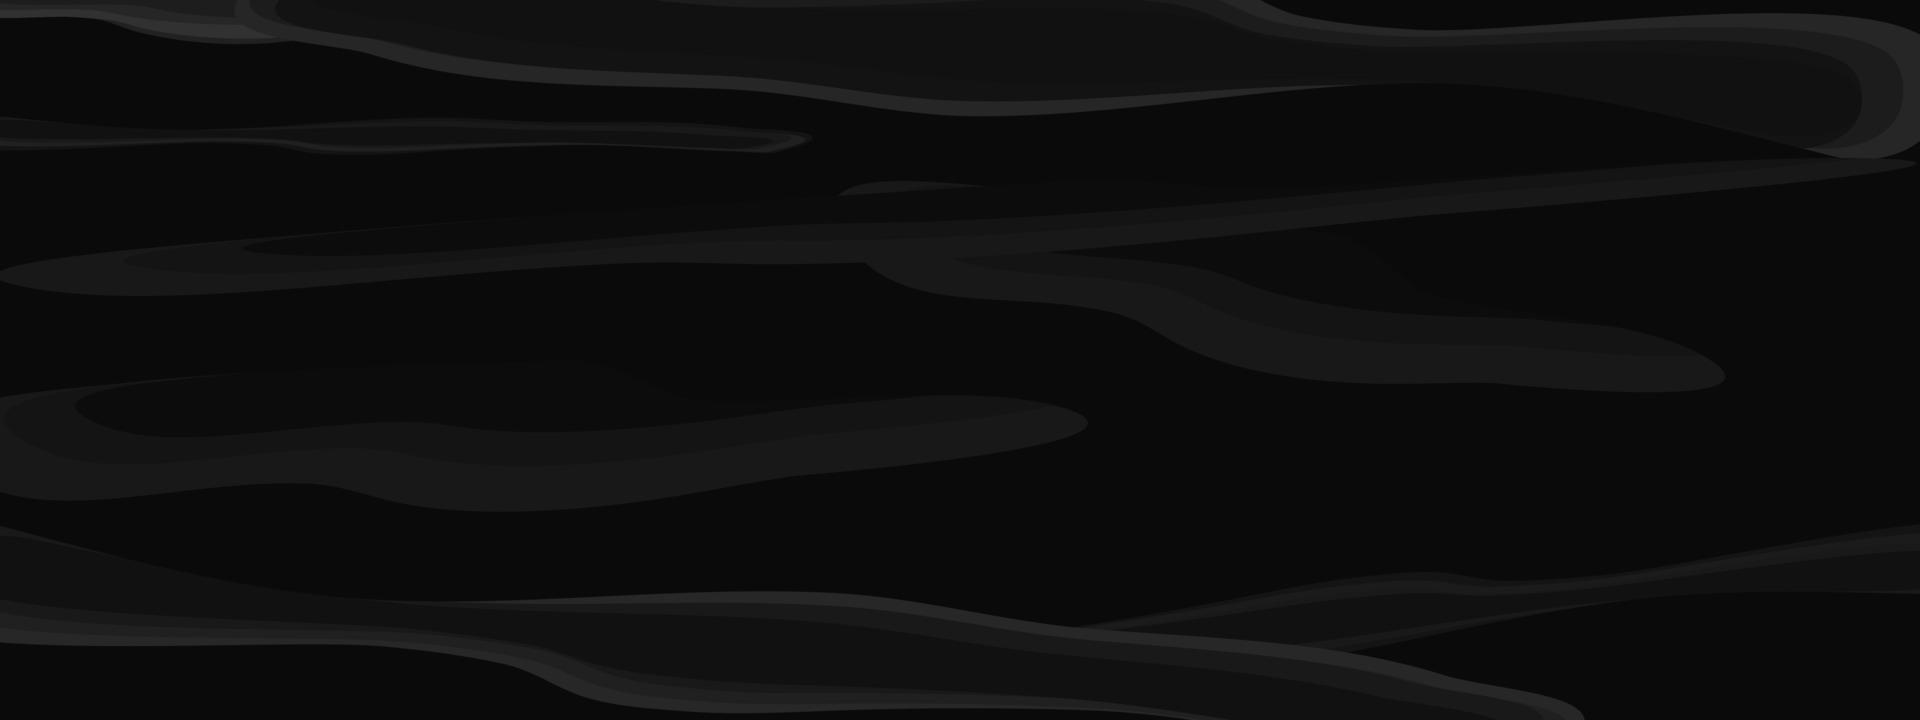 abstrakter hintergrund schwarz bunt strukturierte vorlage künstlerische tapete vektorillustration vektor